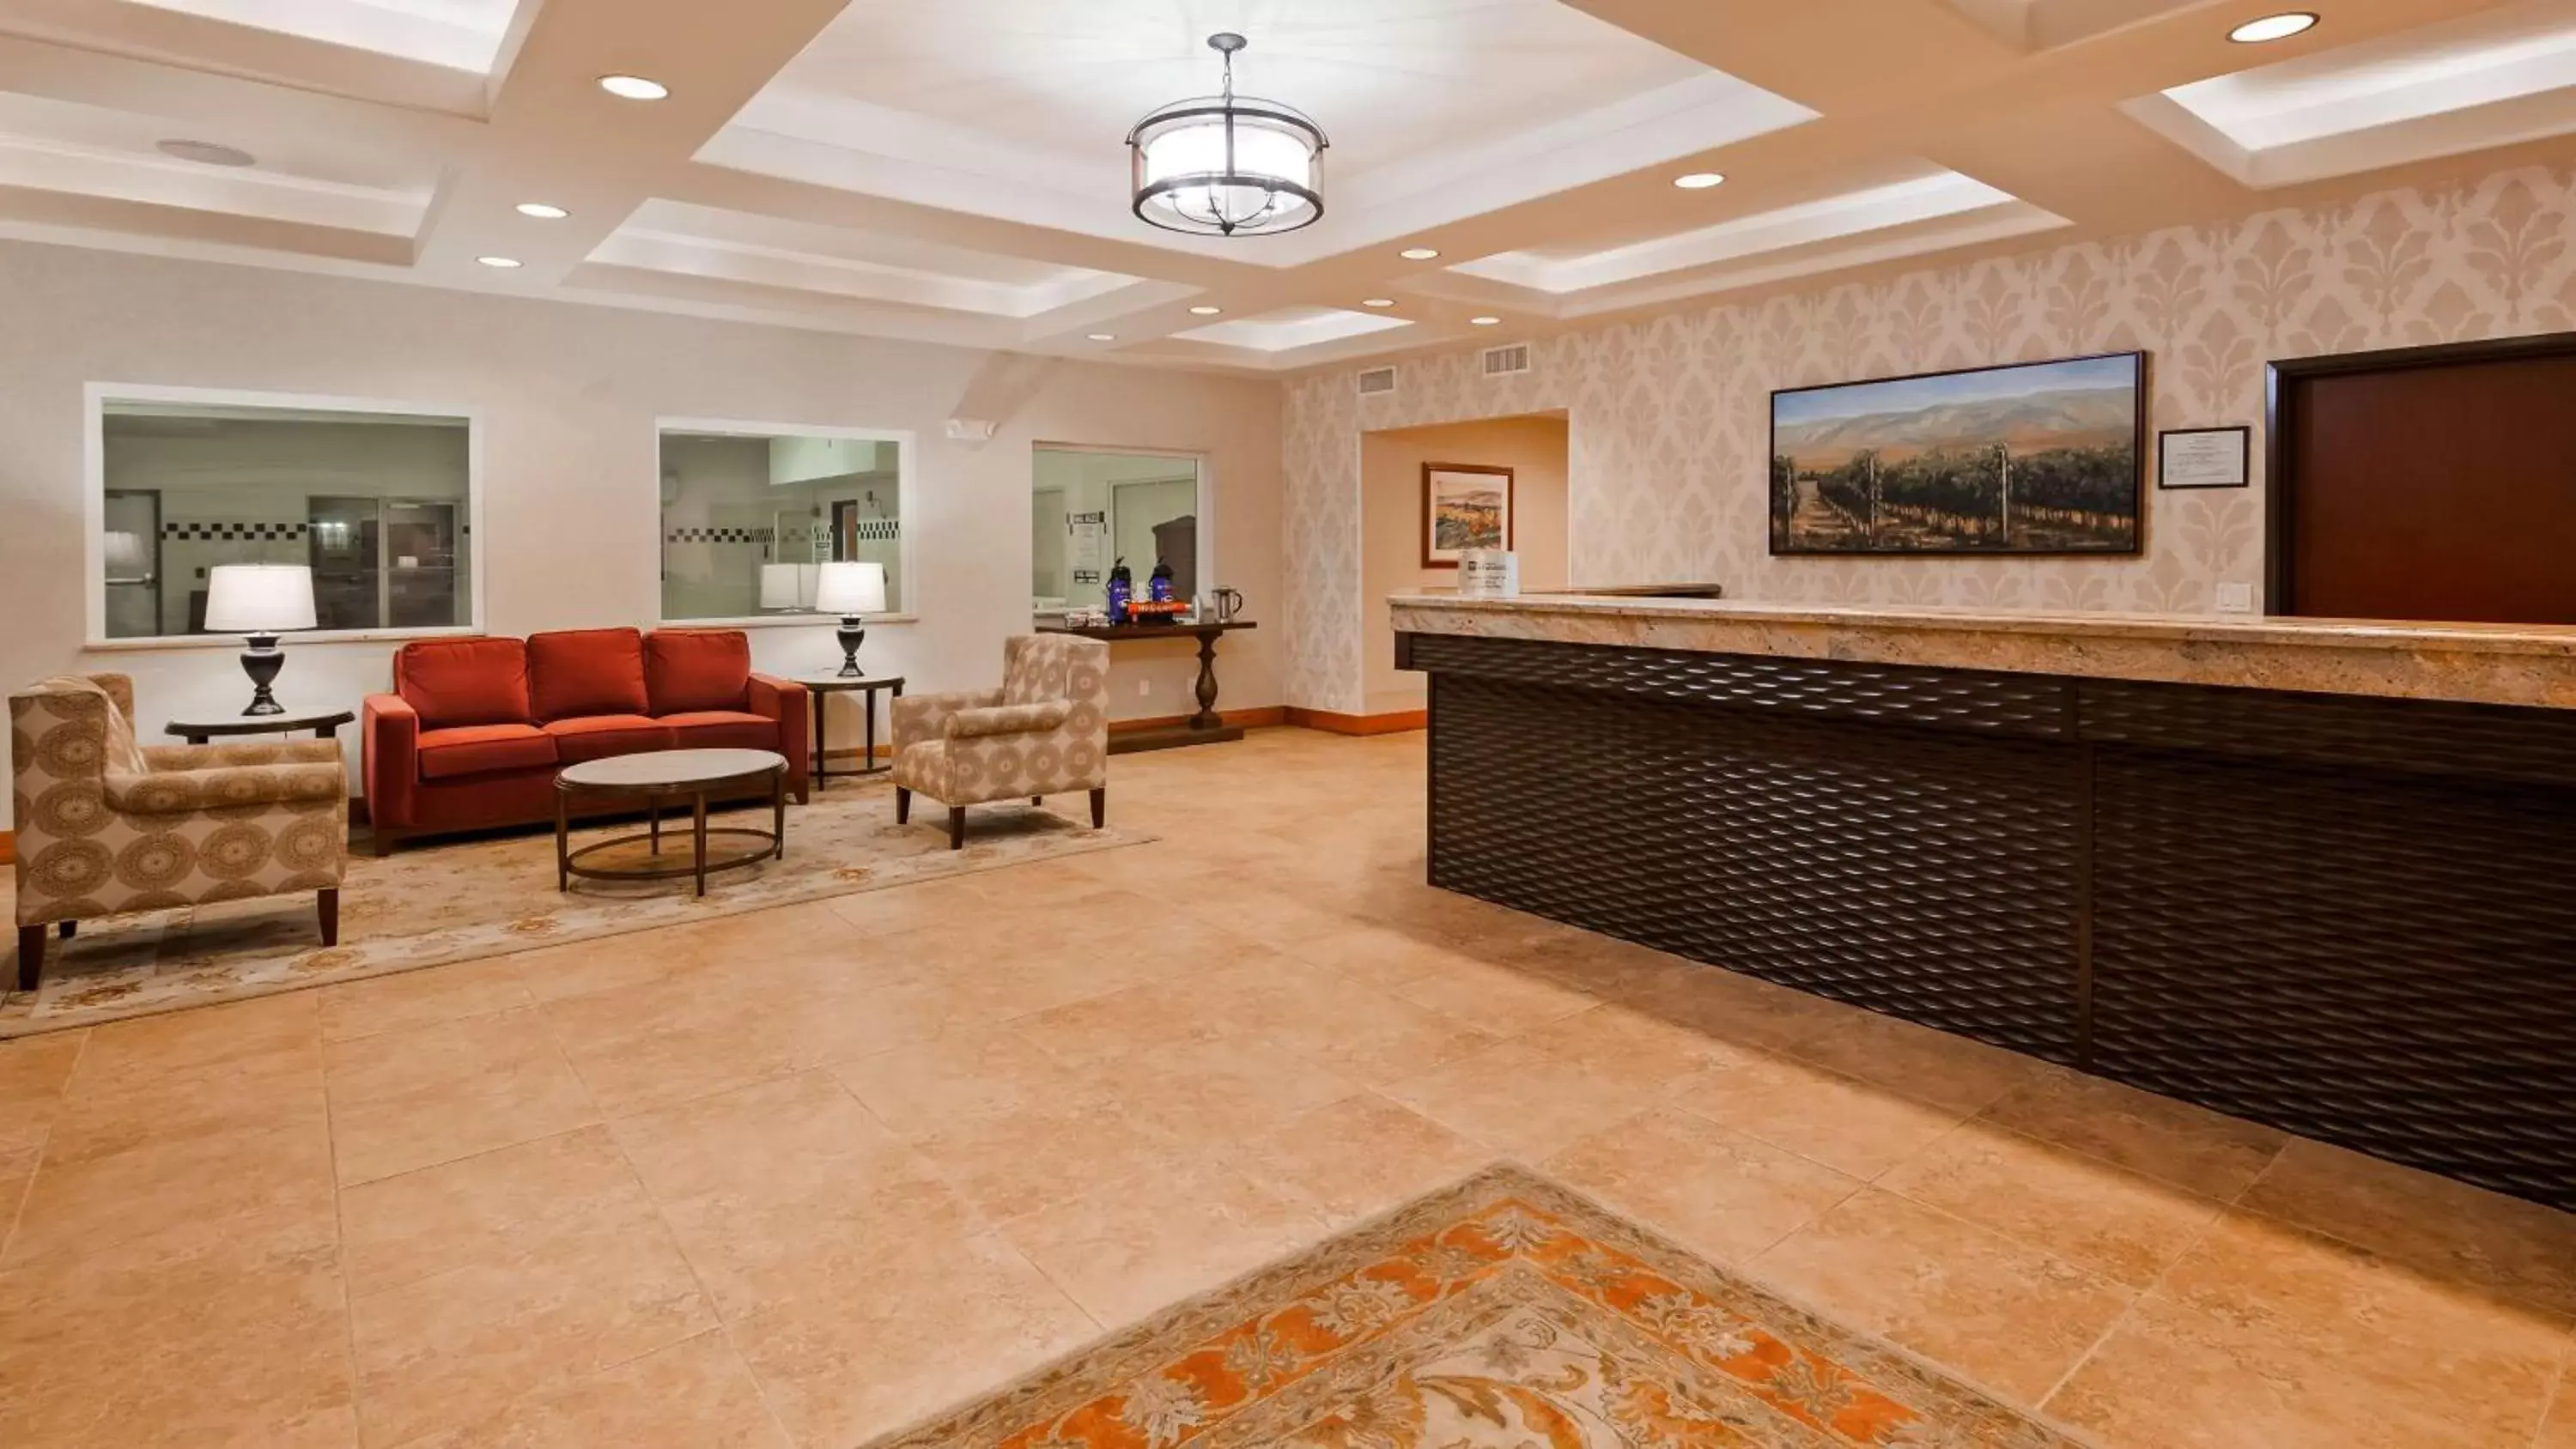 Lobby or reception, Lobby/Reception in Best Western PLUS Walla Walla Suites Inn